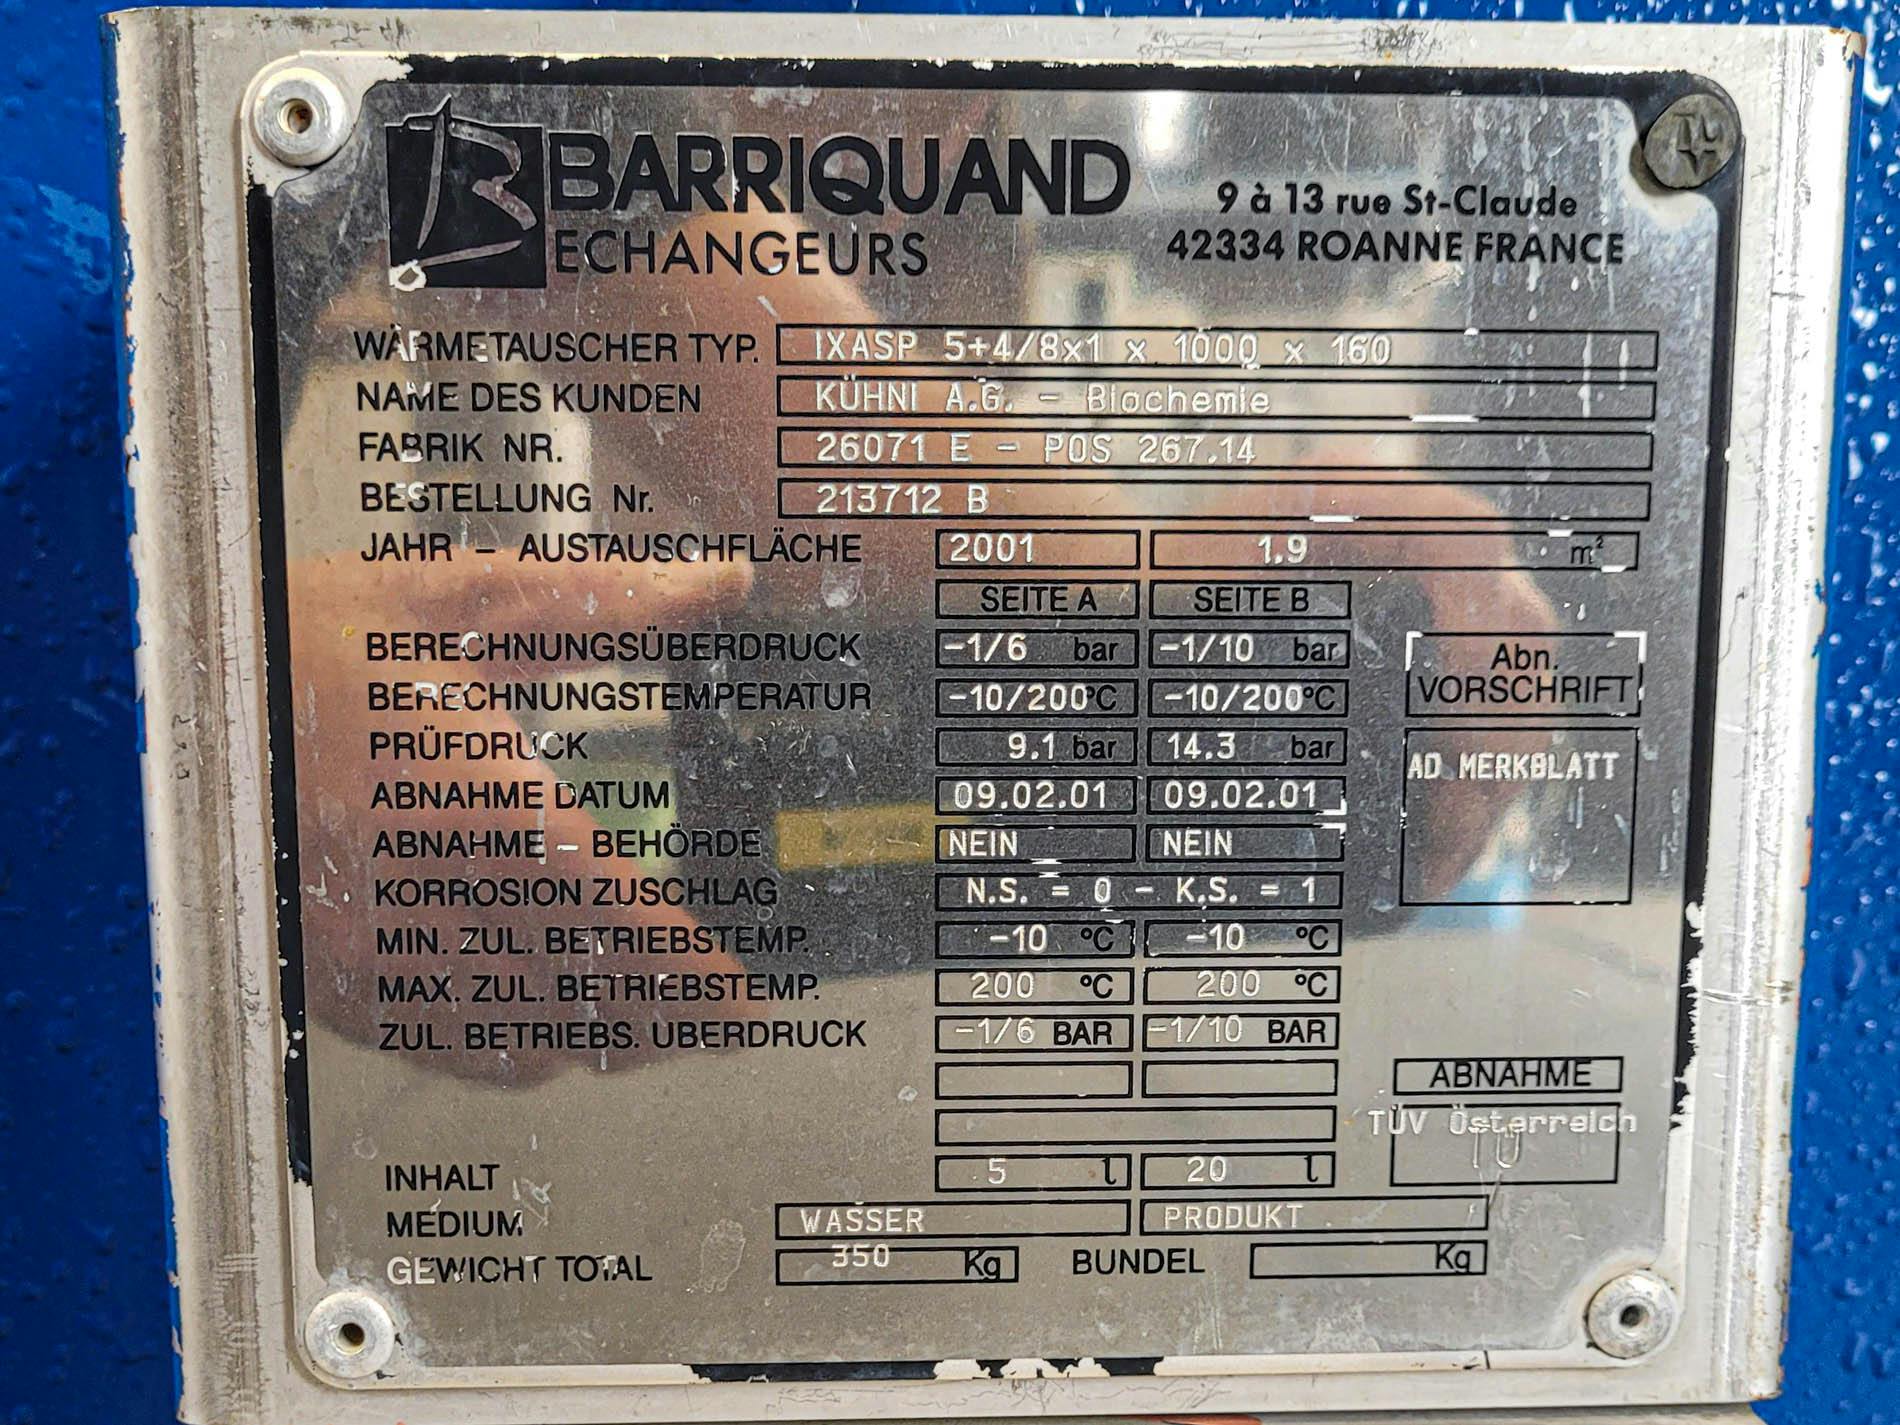 Barriquand IXAP 5+4/8x1 x 1000 x 160 - 1,9 m² - Scambiatore di calore a piastre - image 9